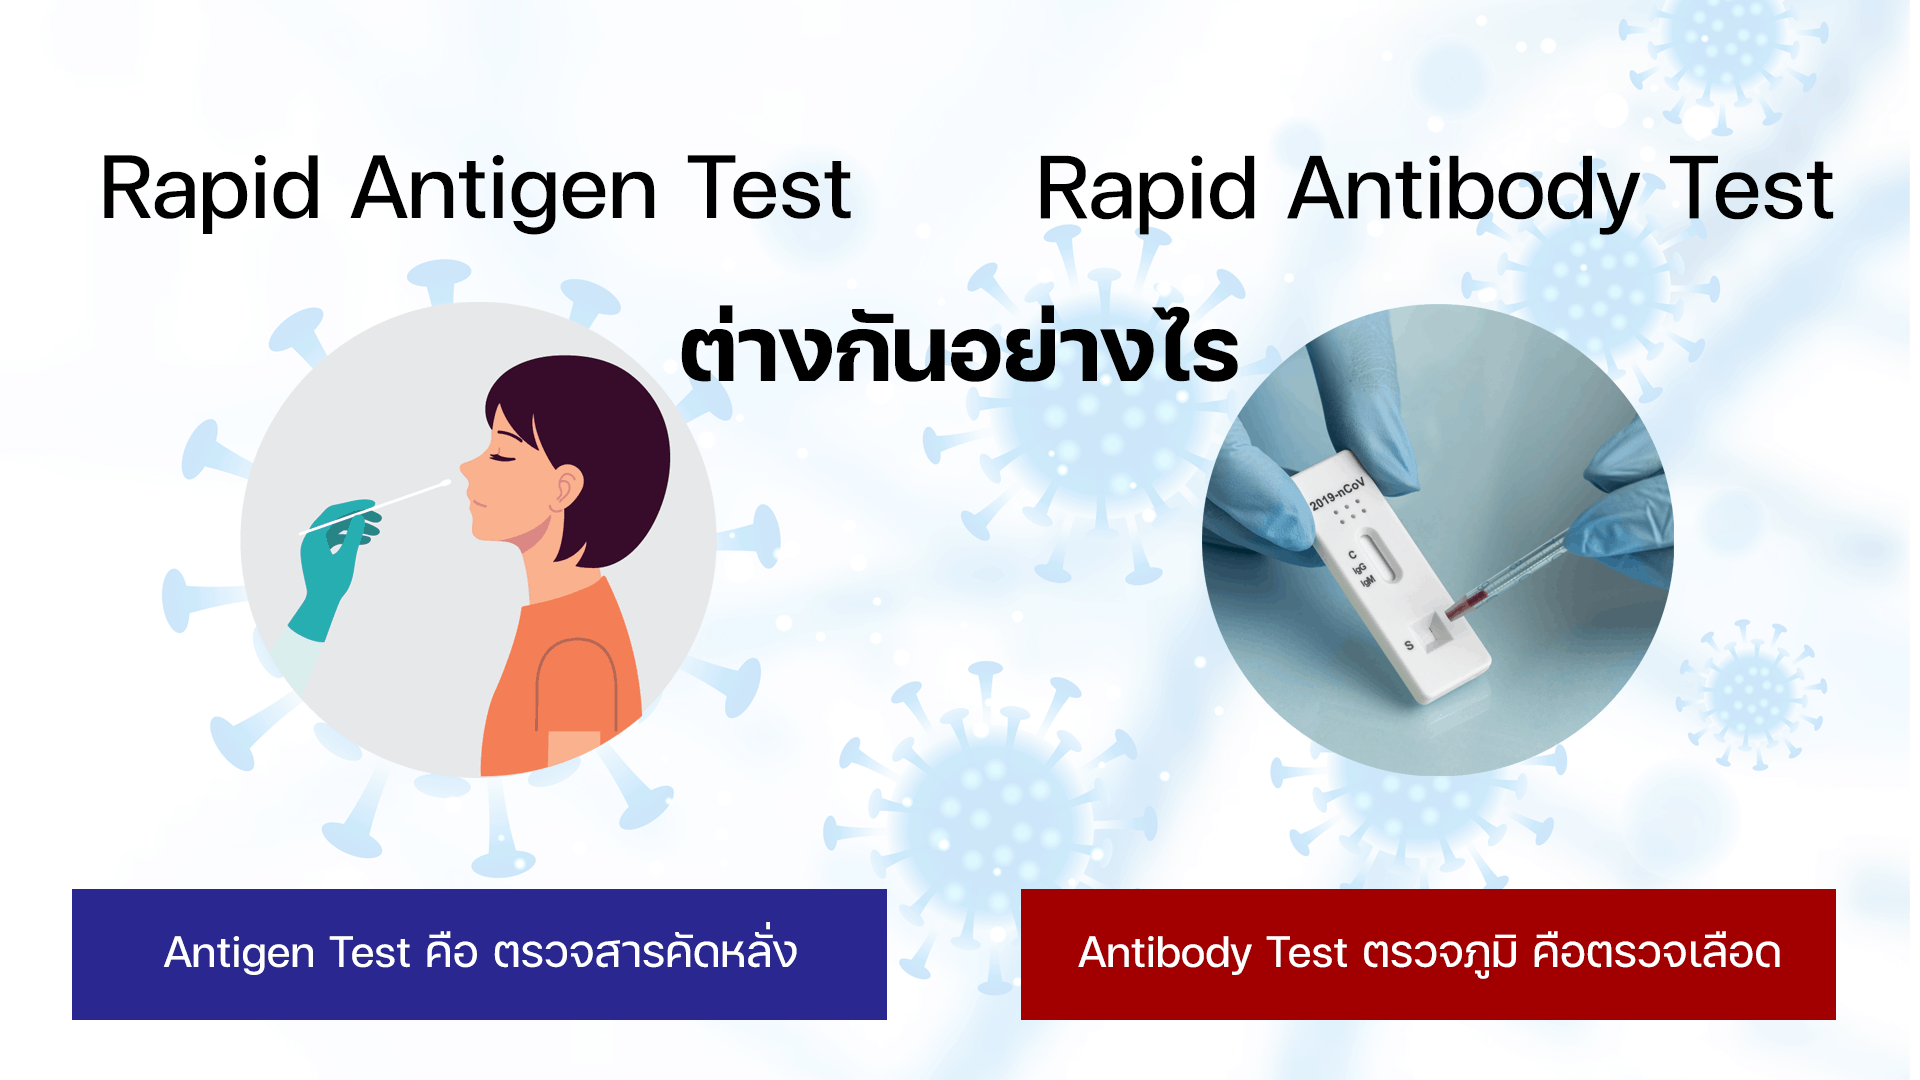 Rapid Antigen Test กับ Rapid Antibody Test ต่างกันอย่างไร?